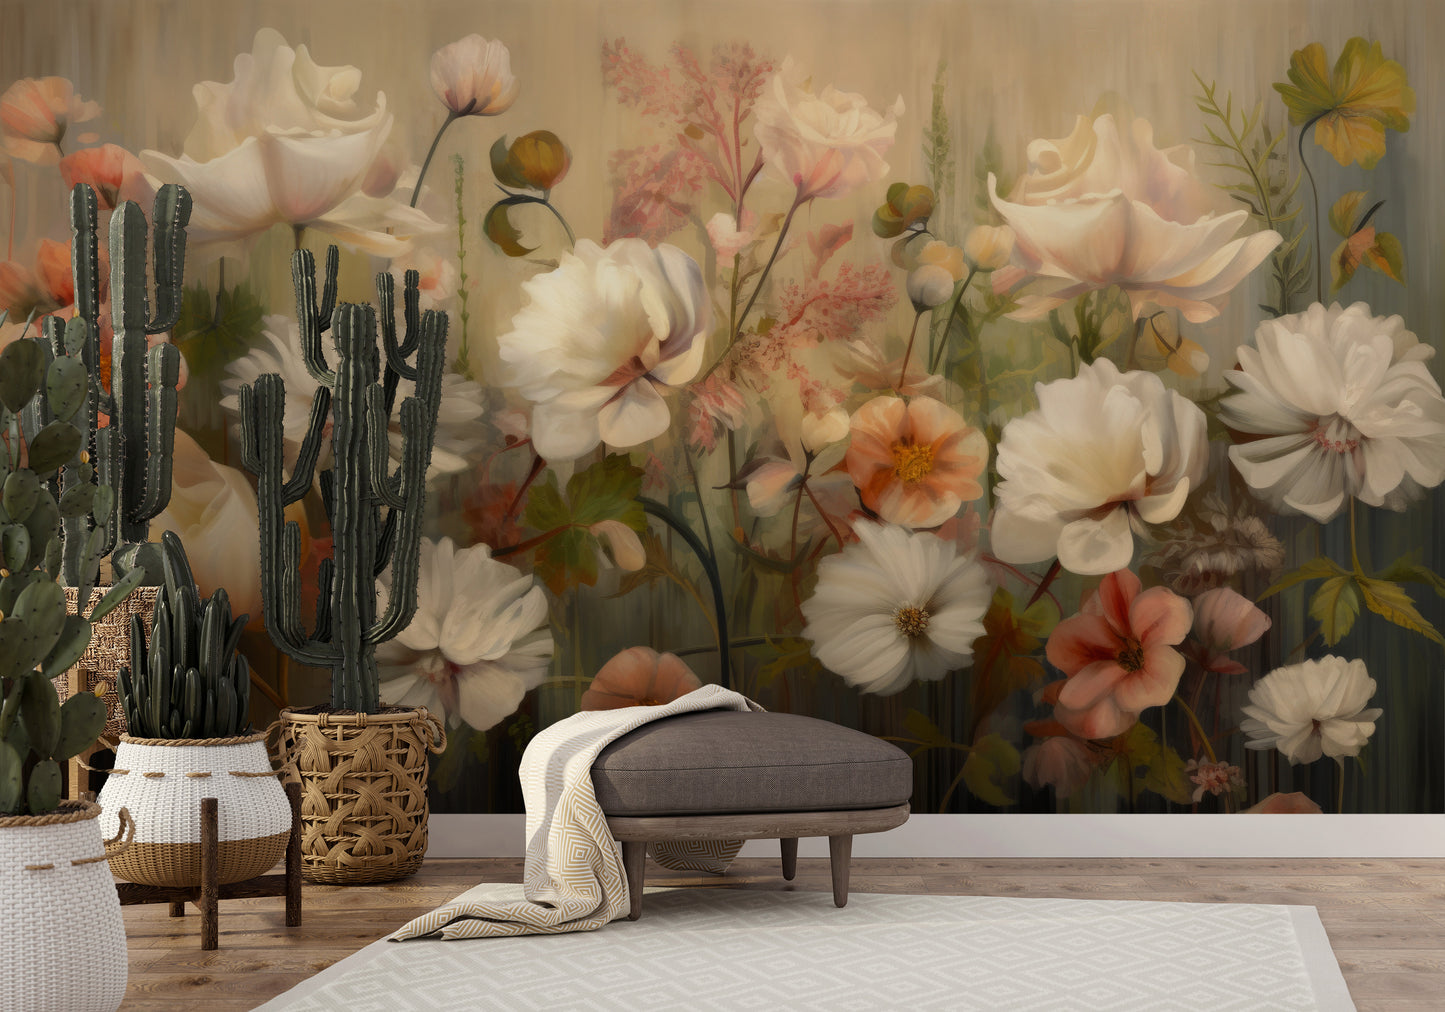 Fototapeta malowana o nazwie Serene Pastel Bouquet pokazana w aranżacji wnętrza.